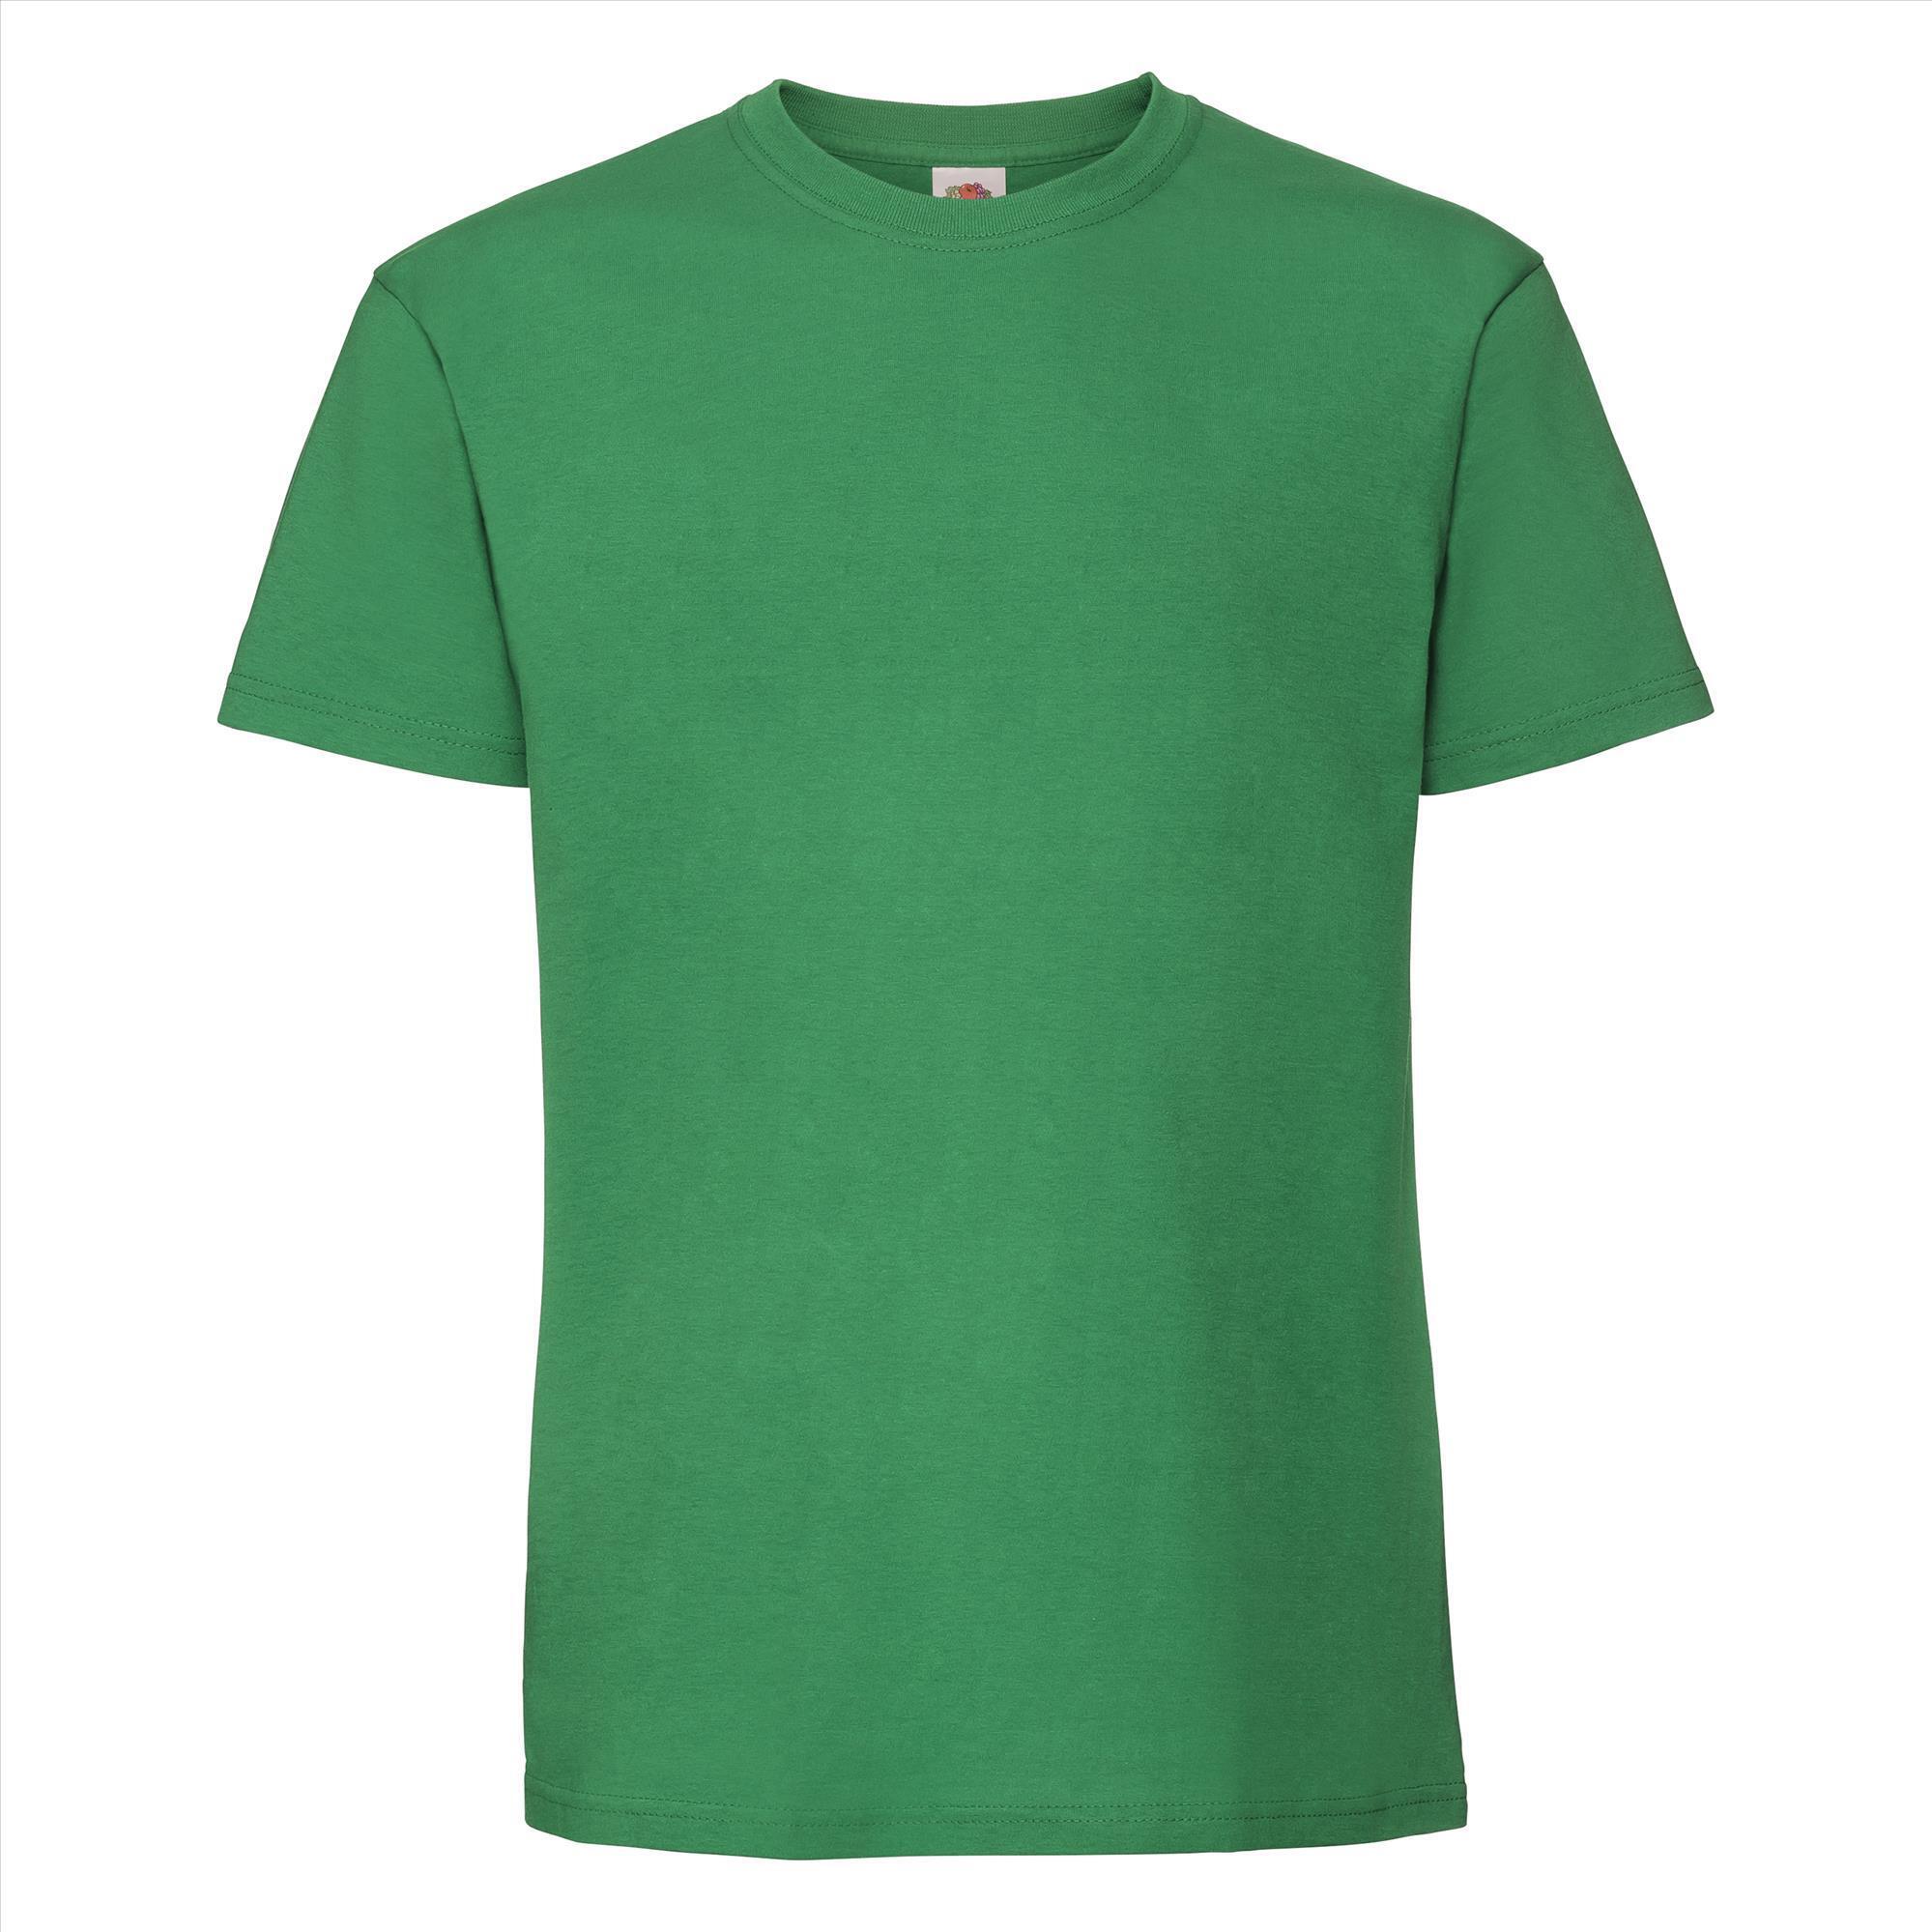 T-shirt kermitgroen korte mouwen voor mannen bedrukbaar te personaliseren